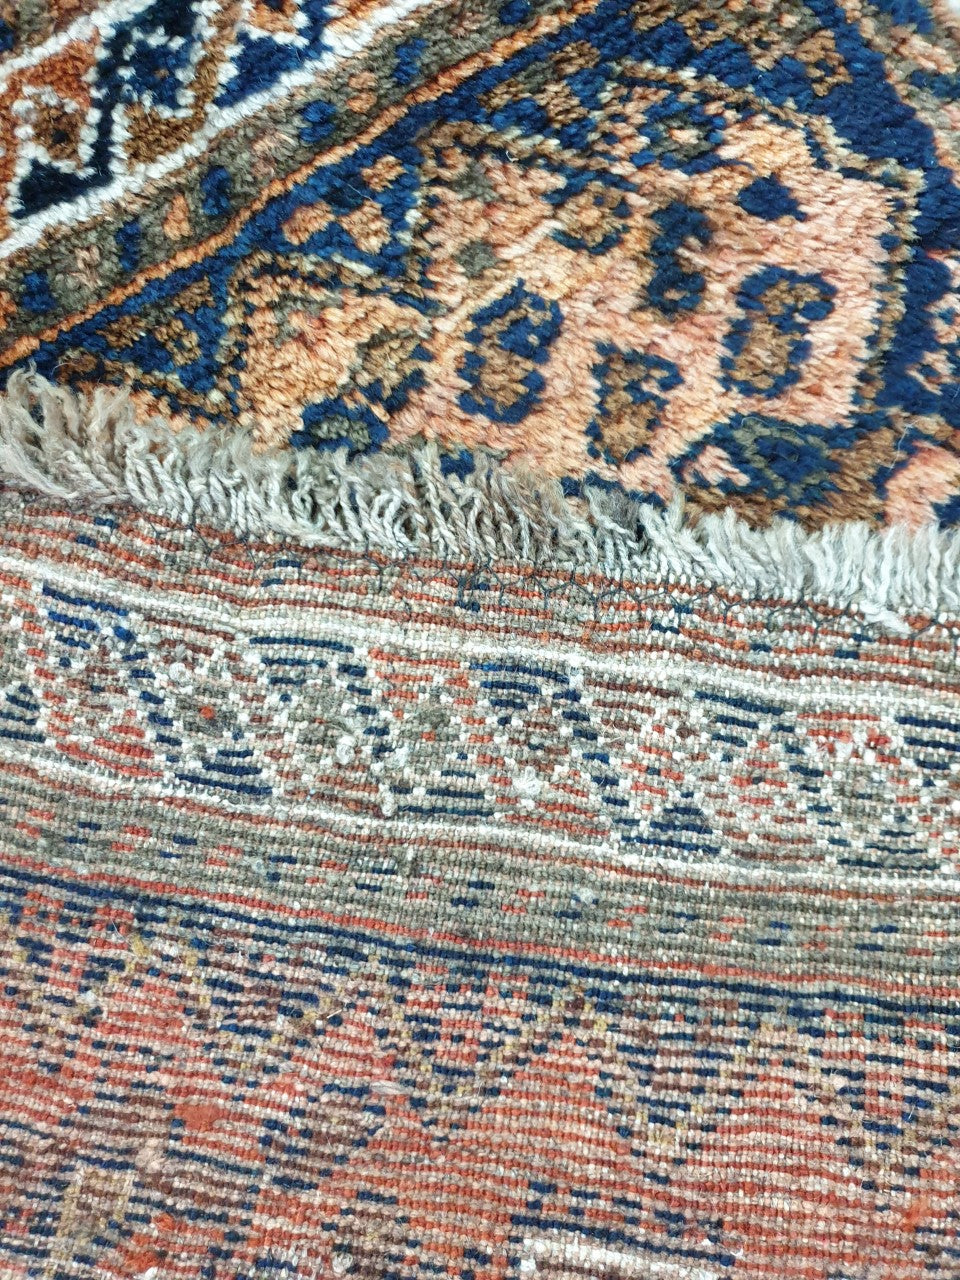 Antique Persian Shiraz rug - Hakiemie Rug Gallery